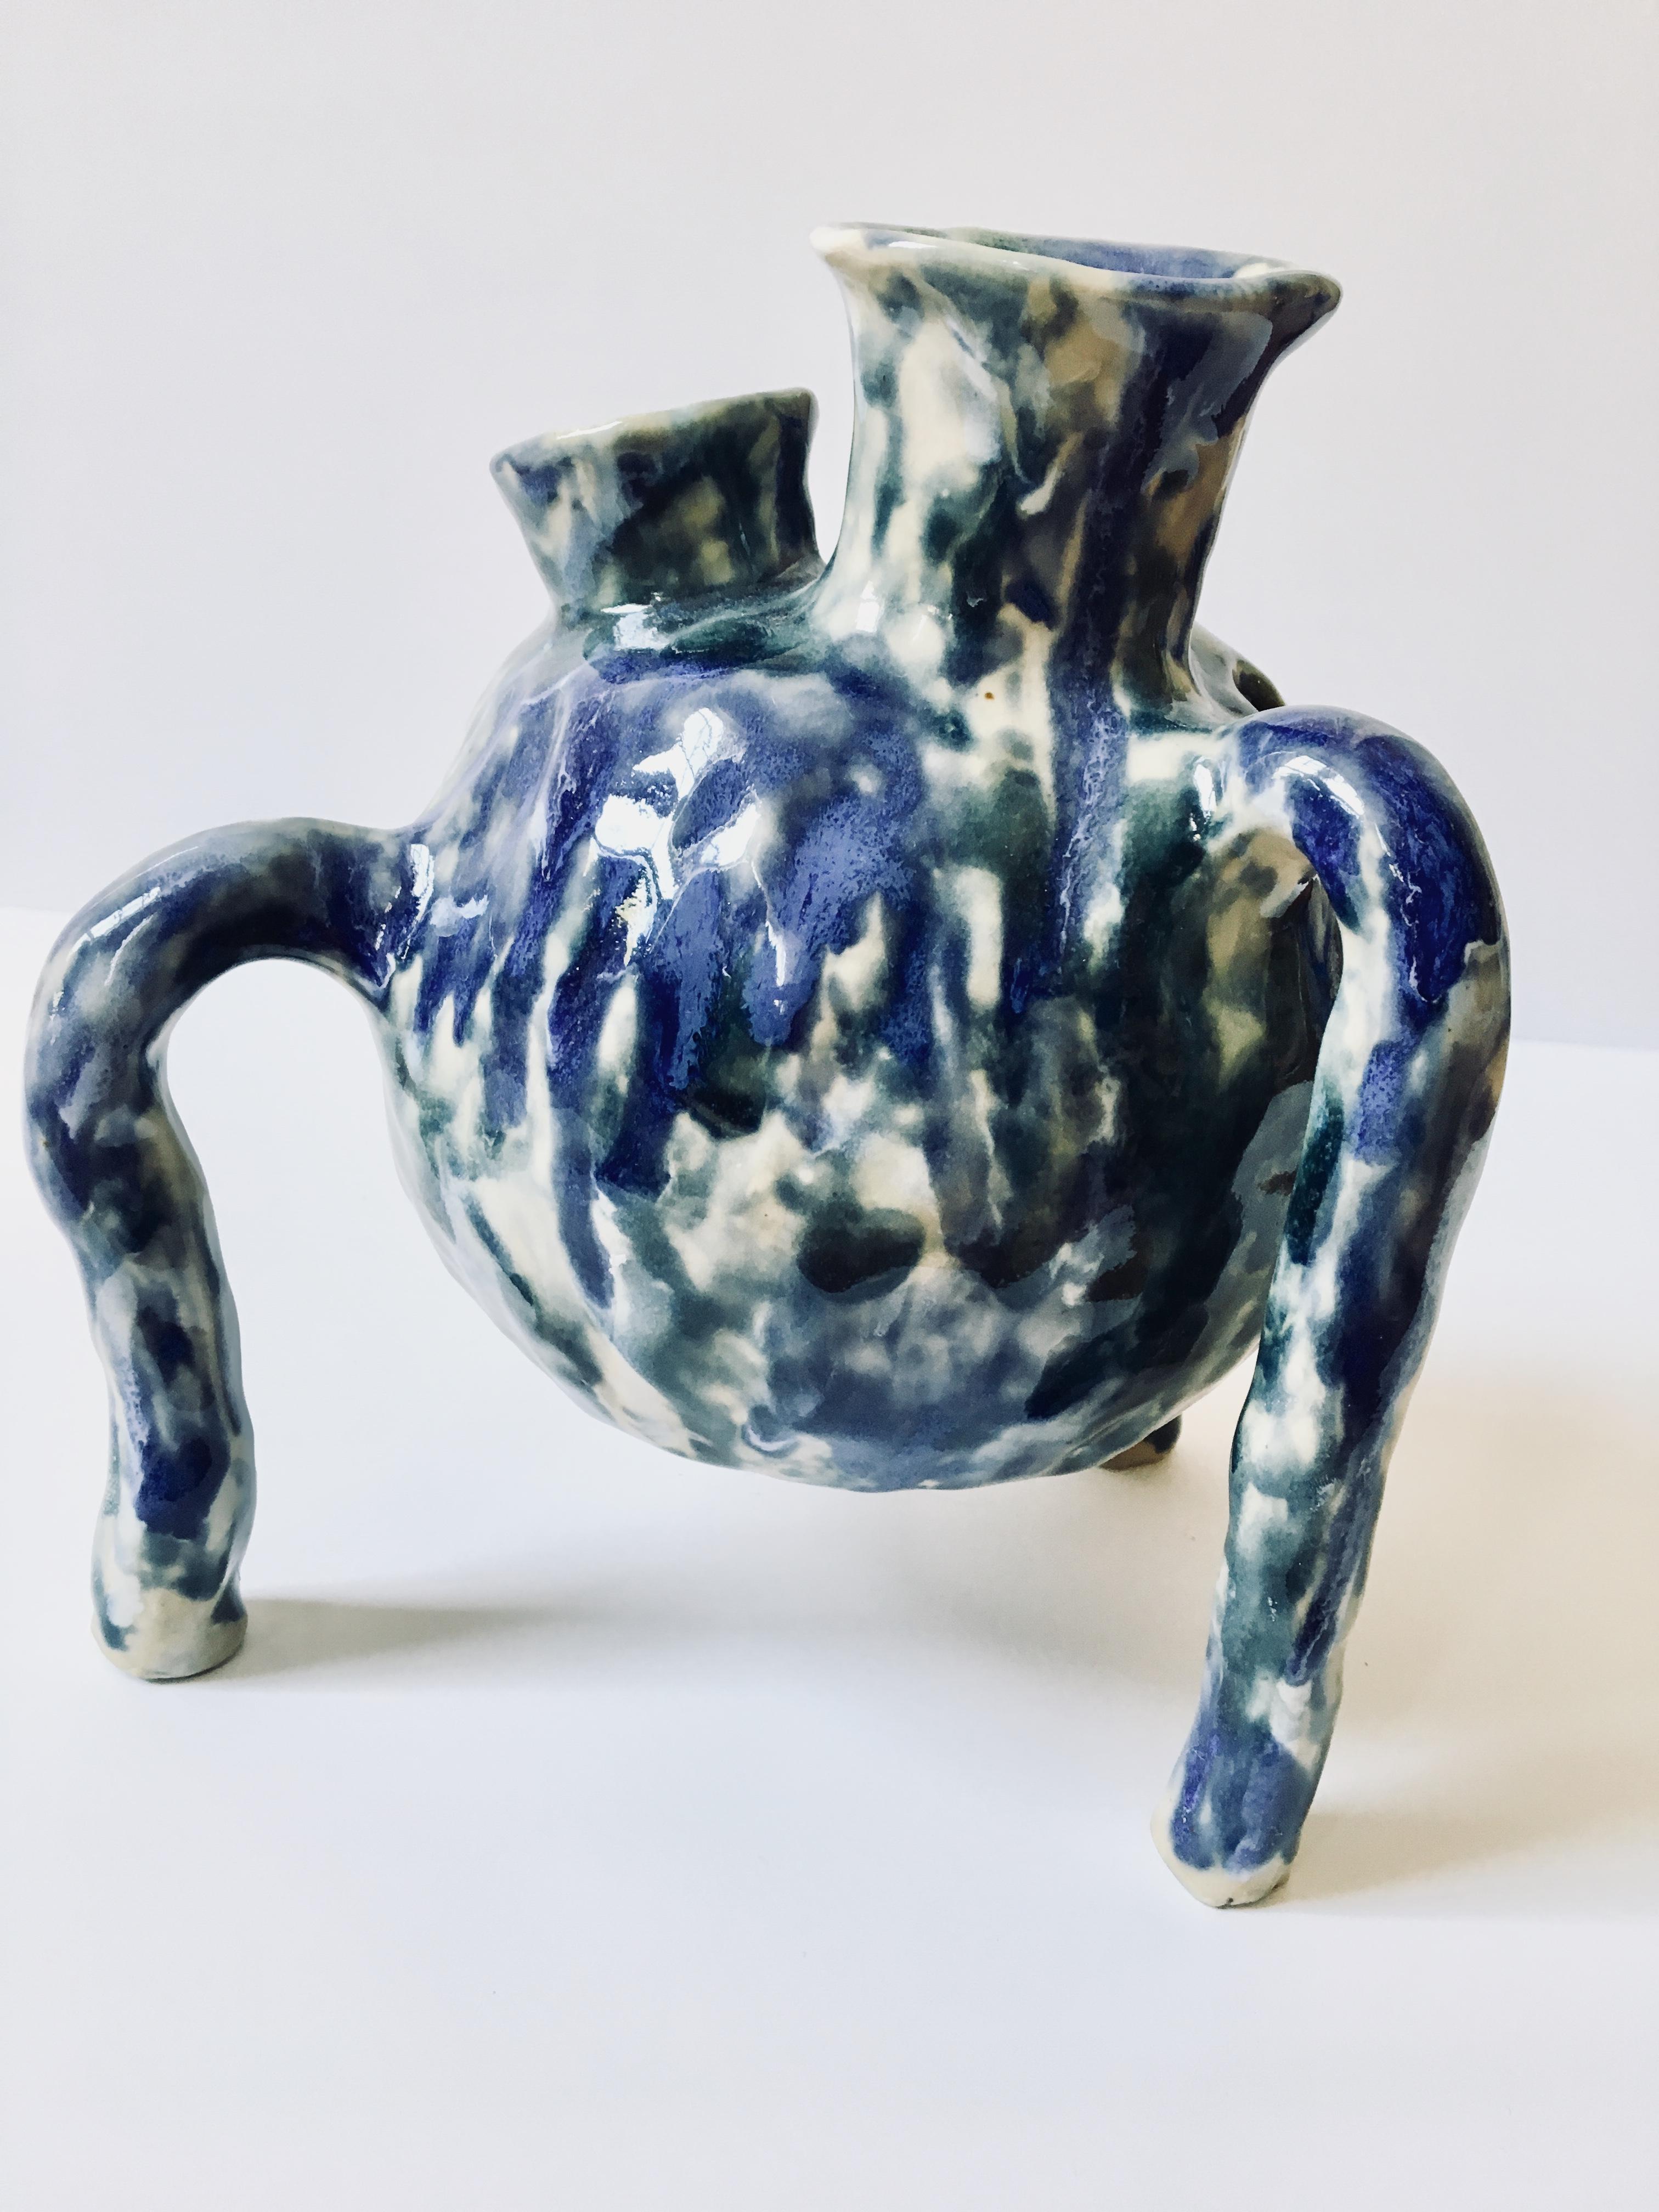 Sculpture ceramic vessel: 'Creature Medium 2'